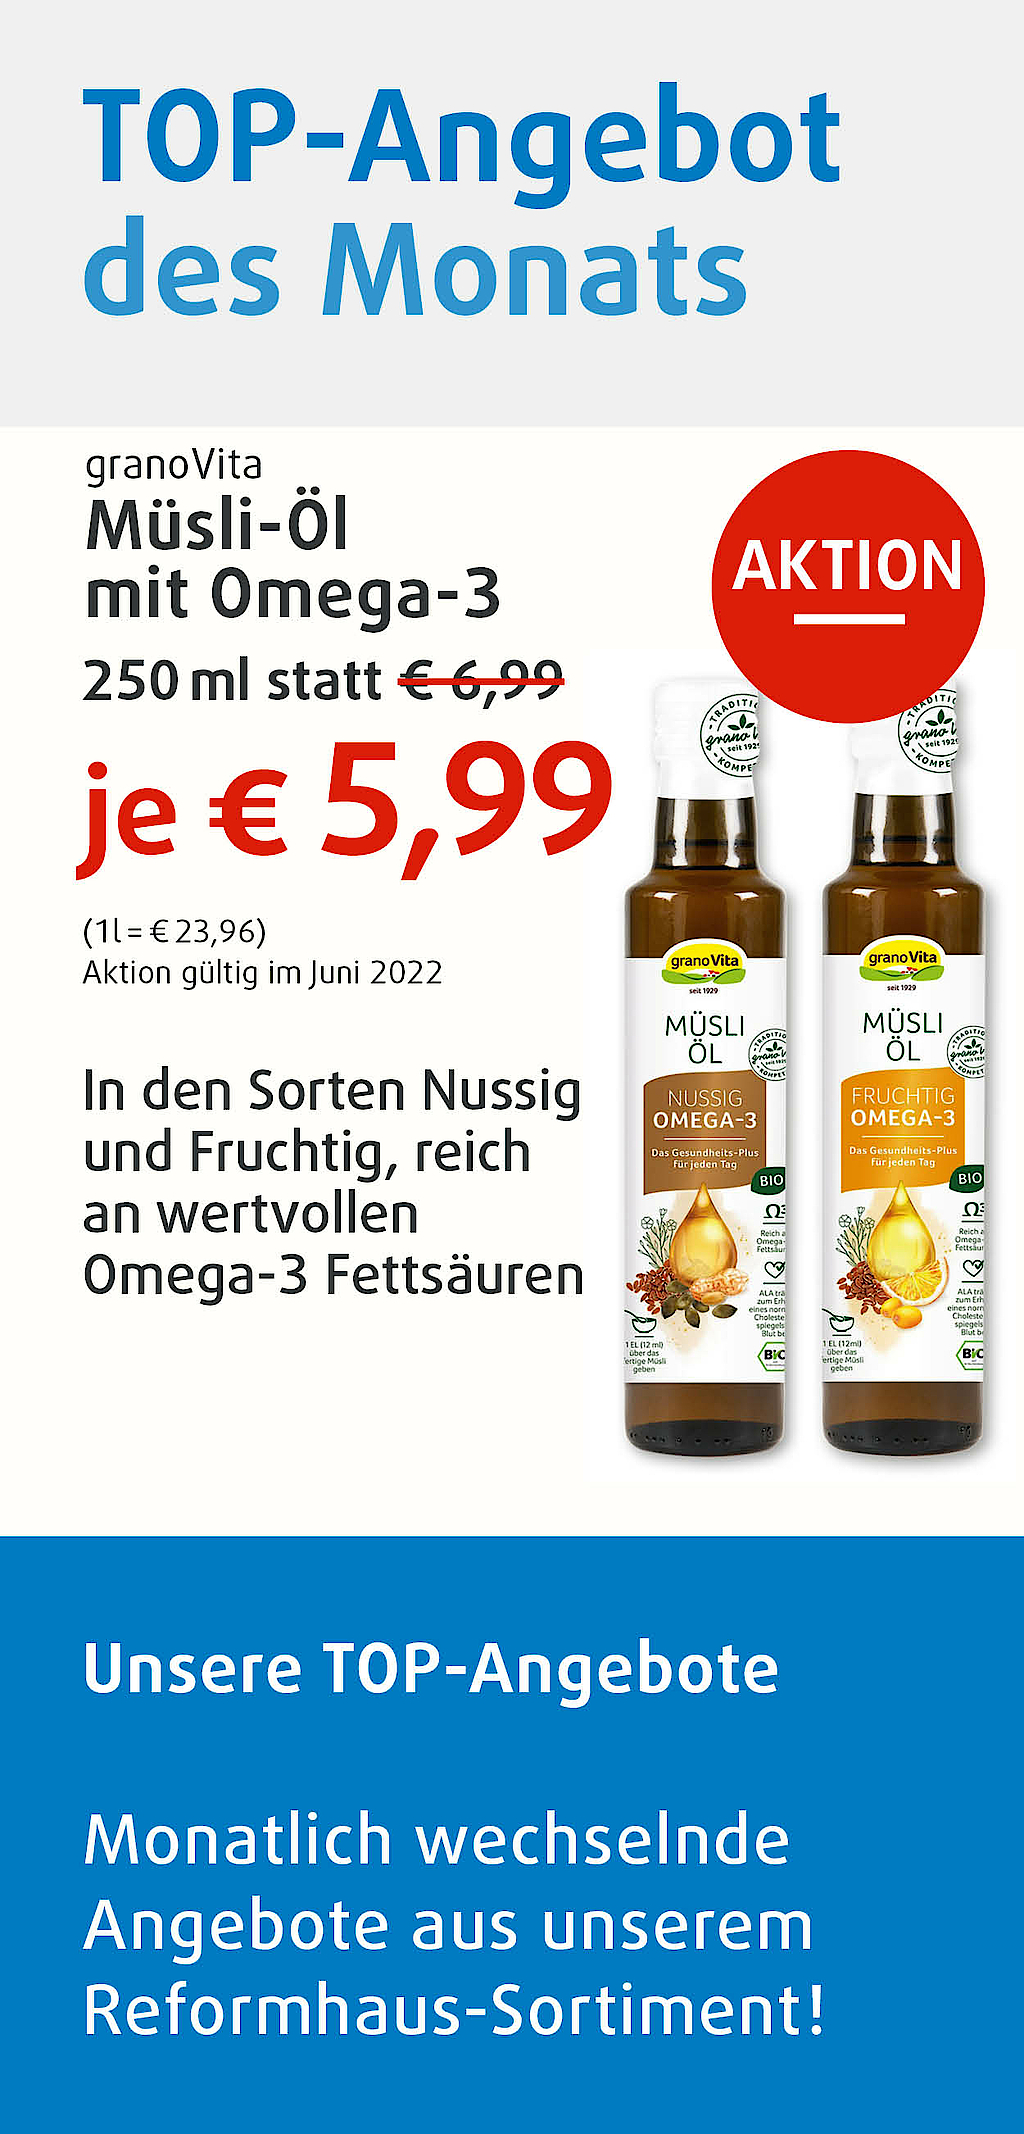 Top-Angebot des Monats, Müsli-Öl von granoVita, 250ml statt 6,99 Euro jetzt nur 5,99 Euro